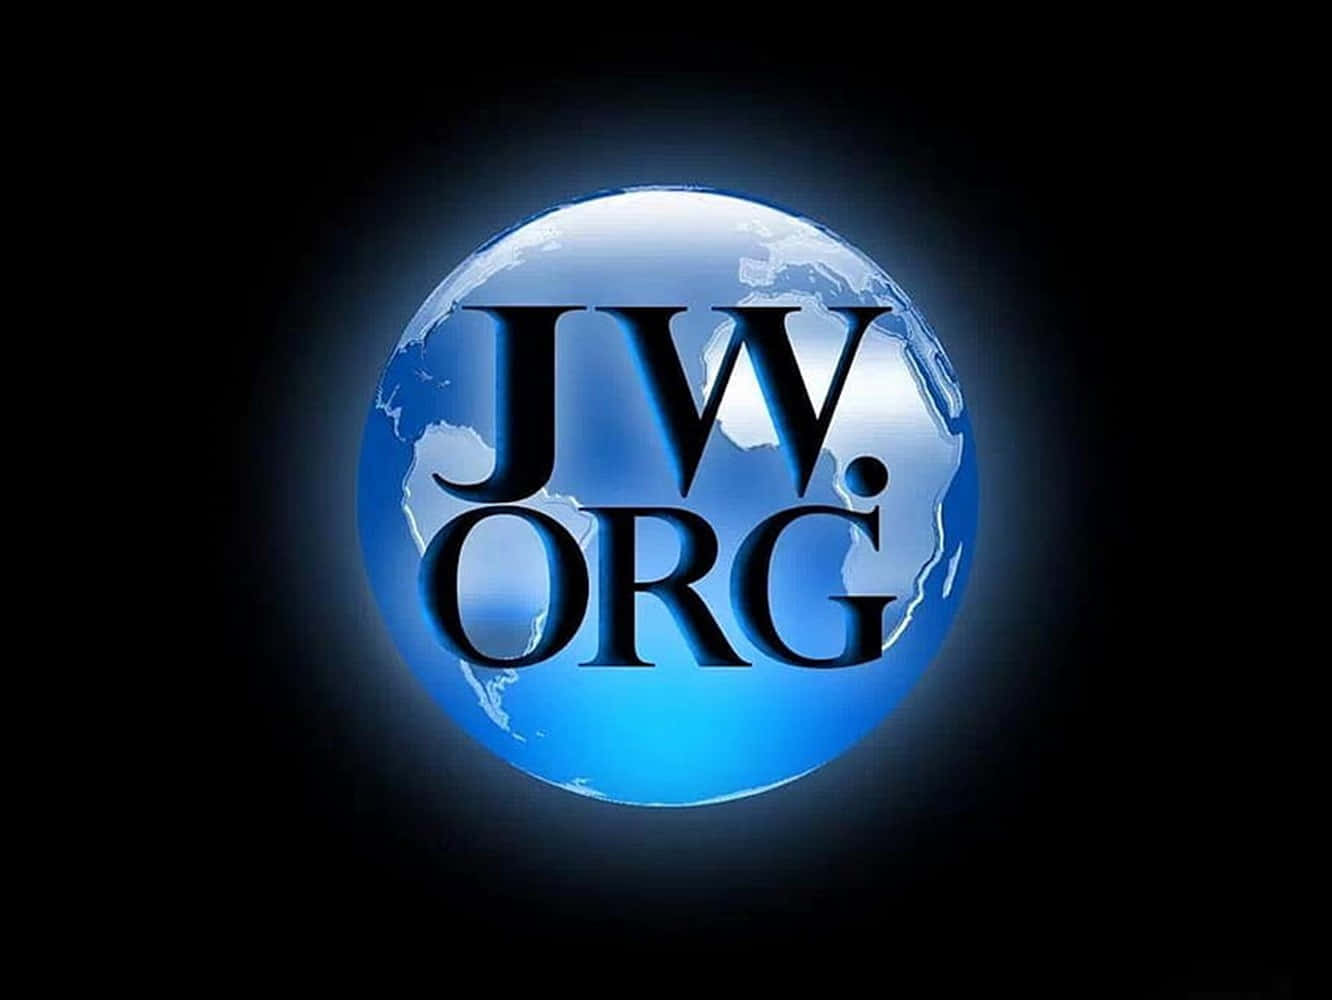 Logode Jworg En Una Imagen De La Tierra Fondo de pantalla